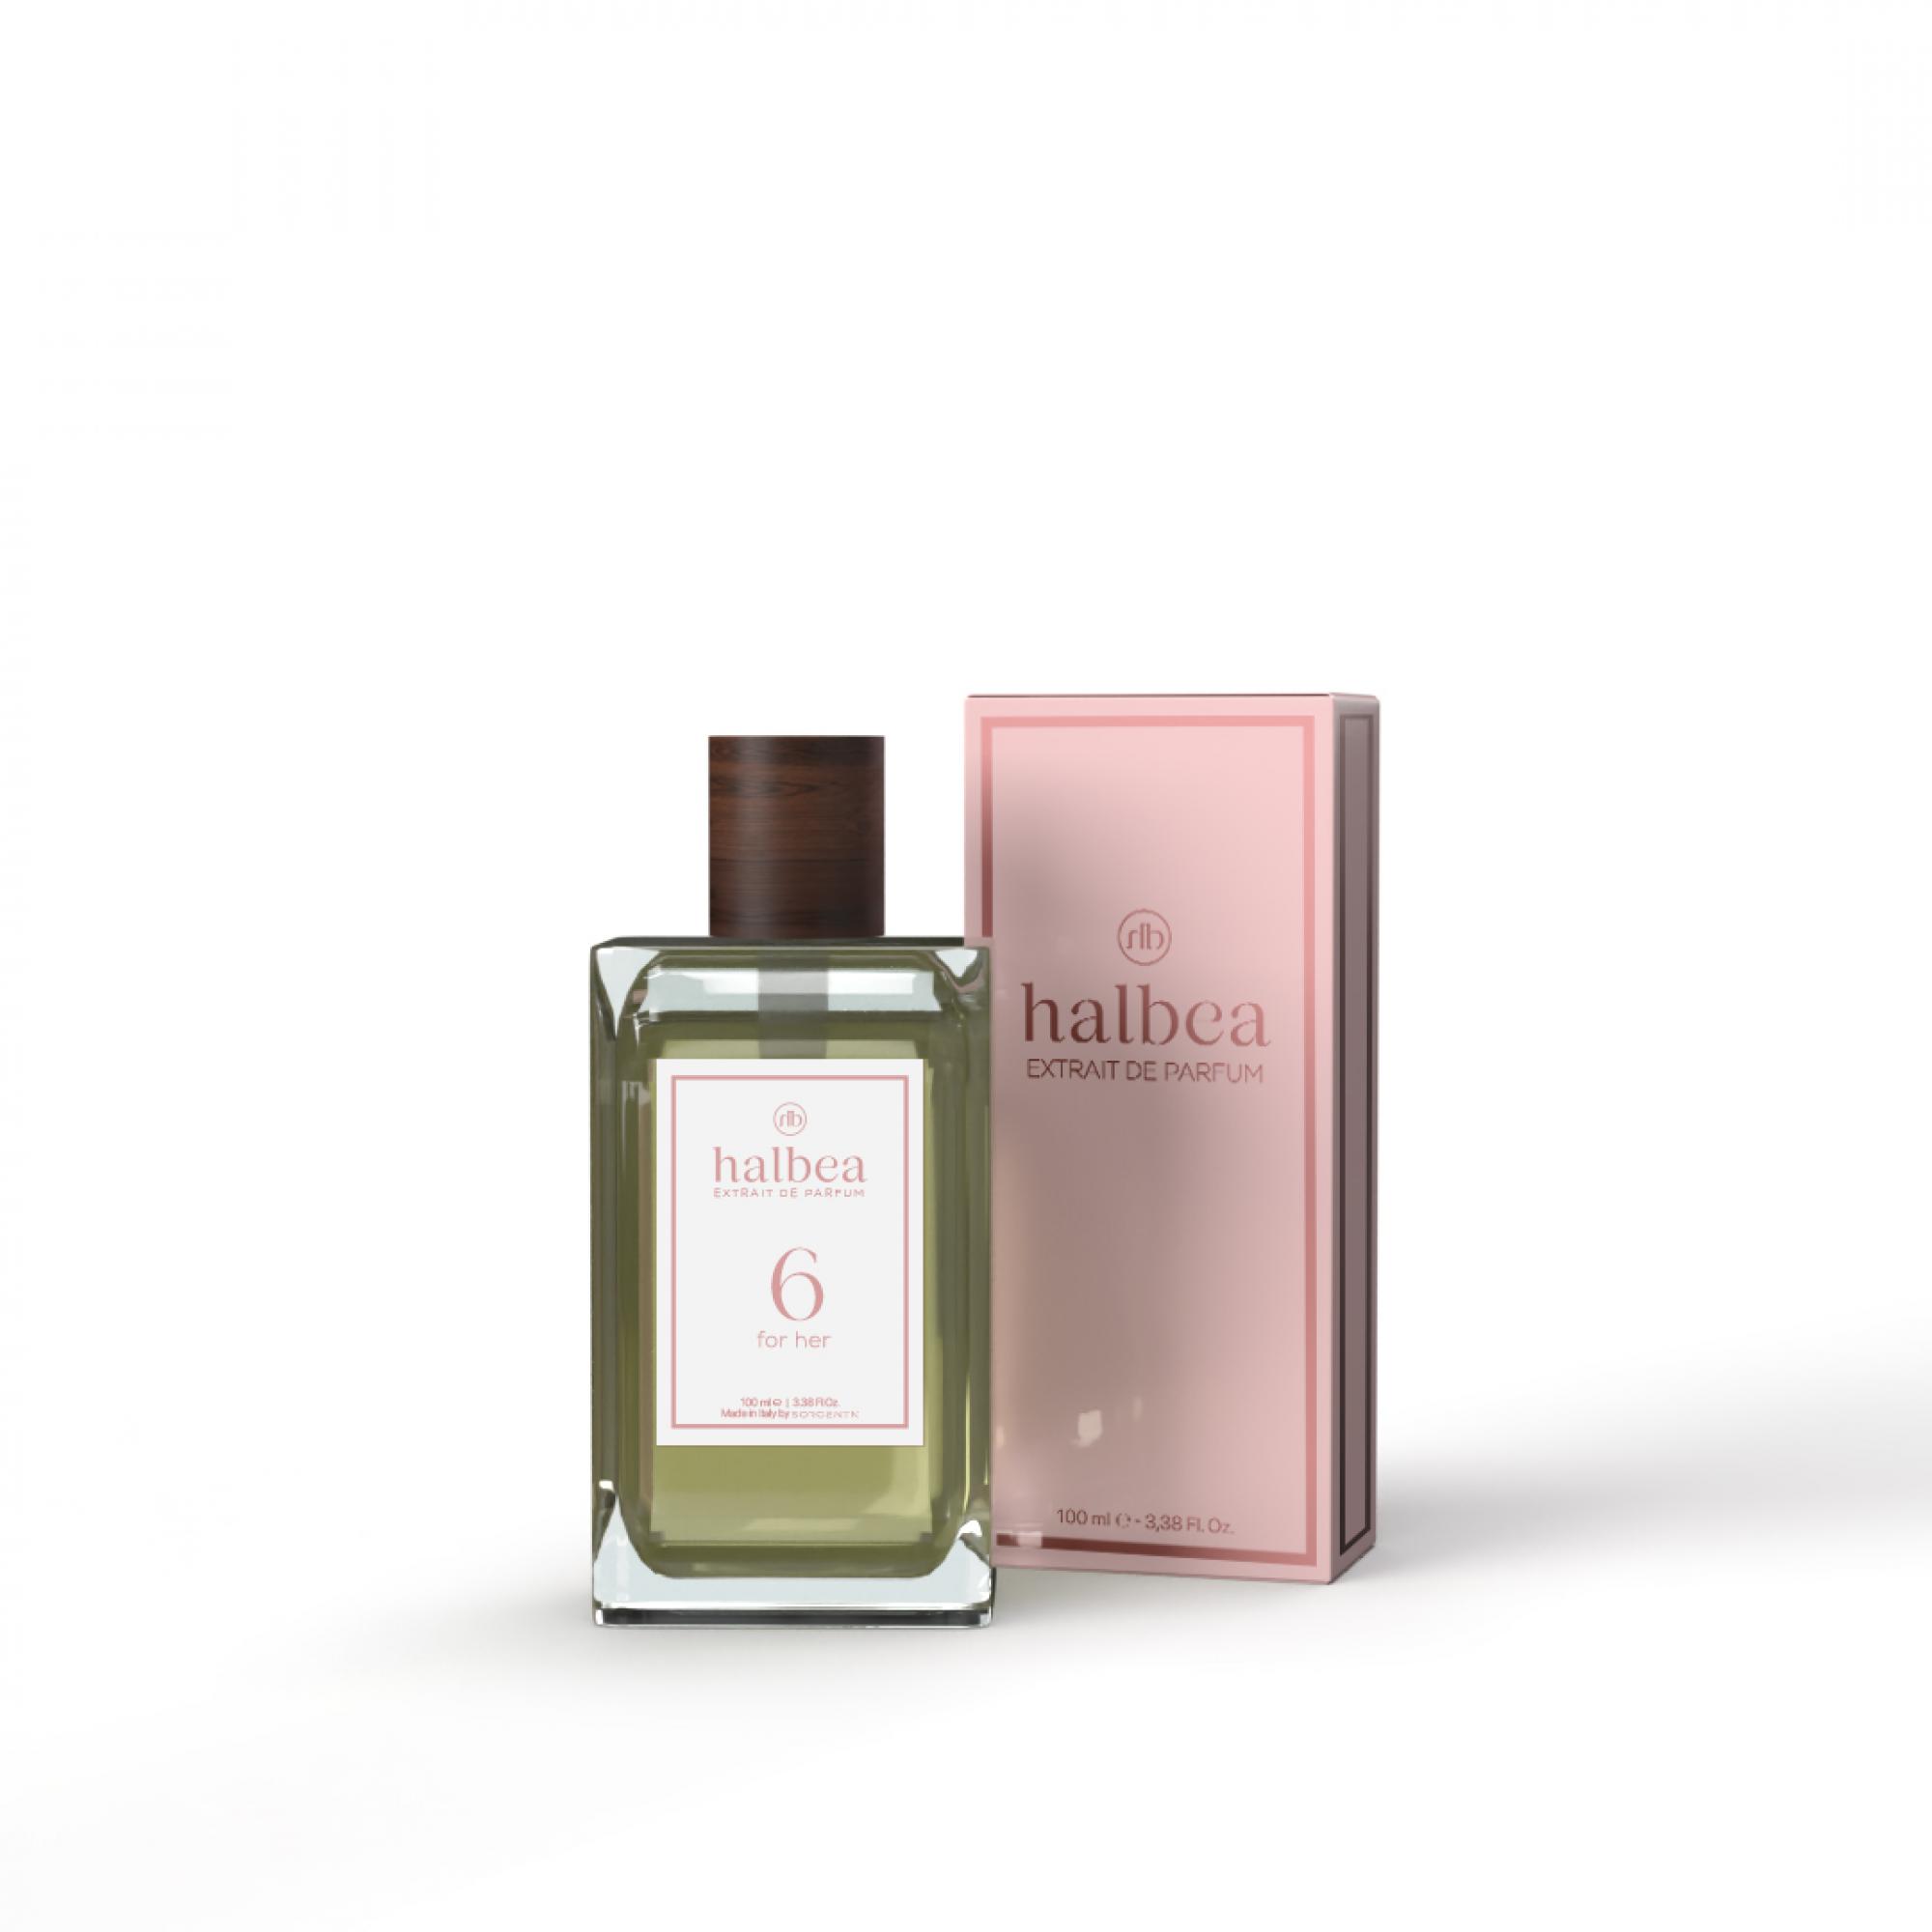 Halbea Parfum Nr. 6 insb. by Thierry Mugler von Angel 100ml